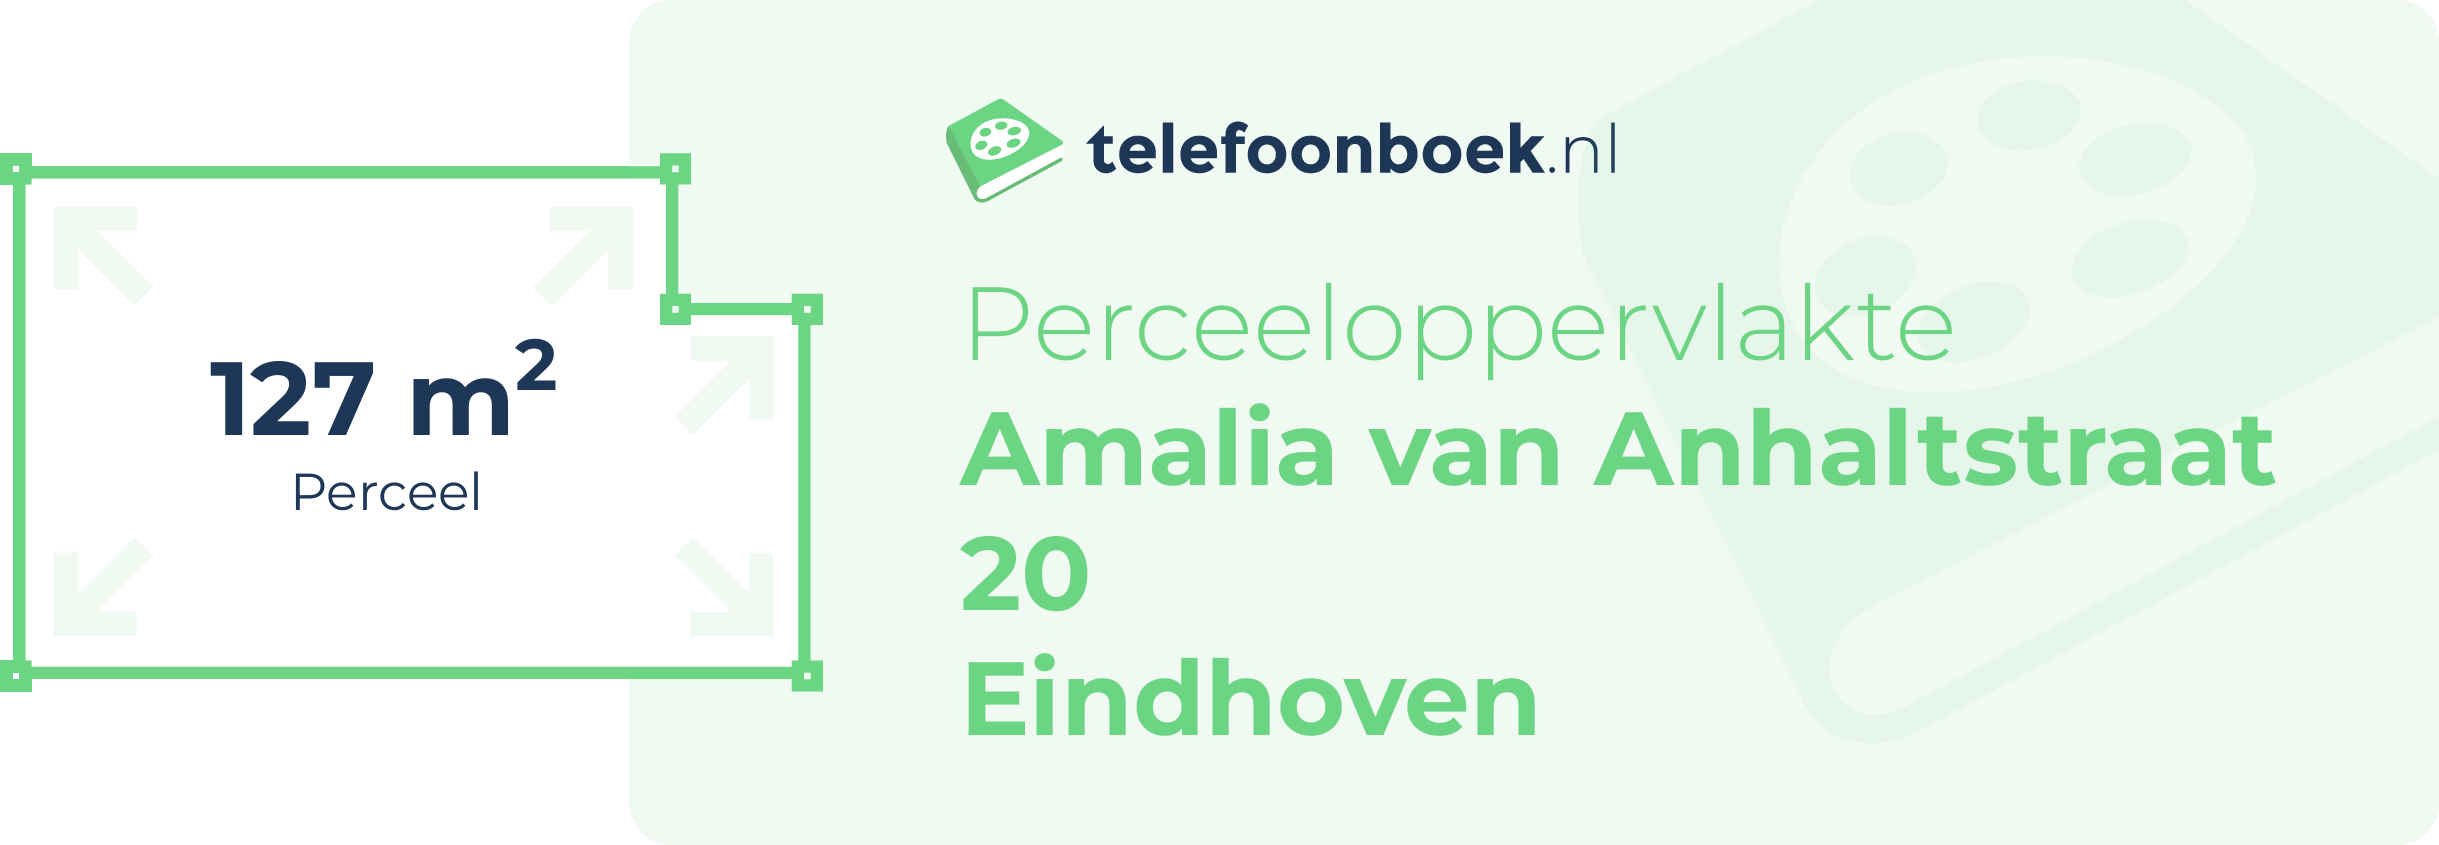 Perceeloppervlakte Amalia Van Anhaltstraat 20 Eindhoven